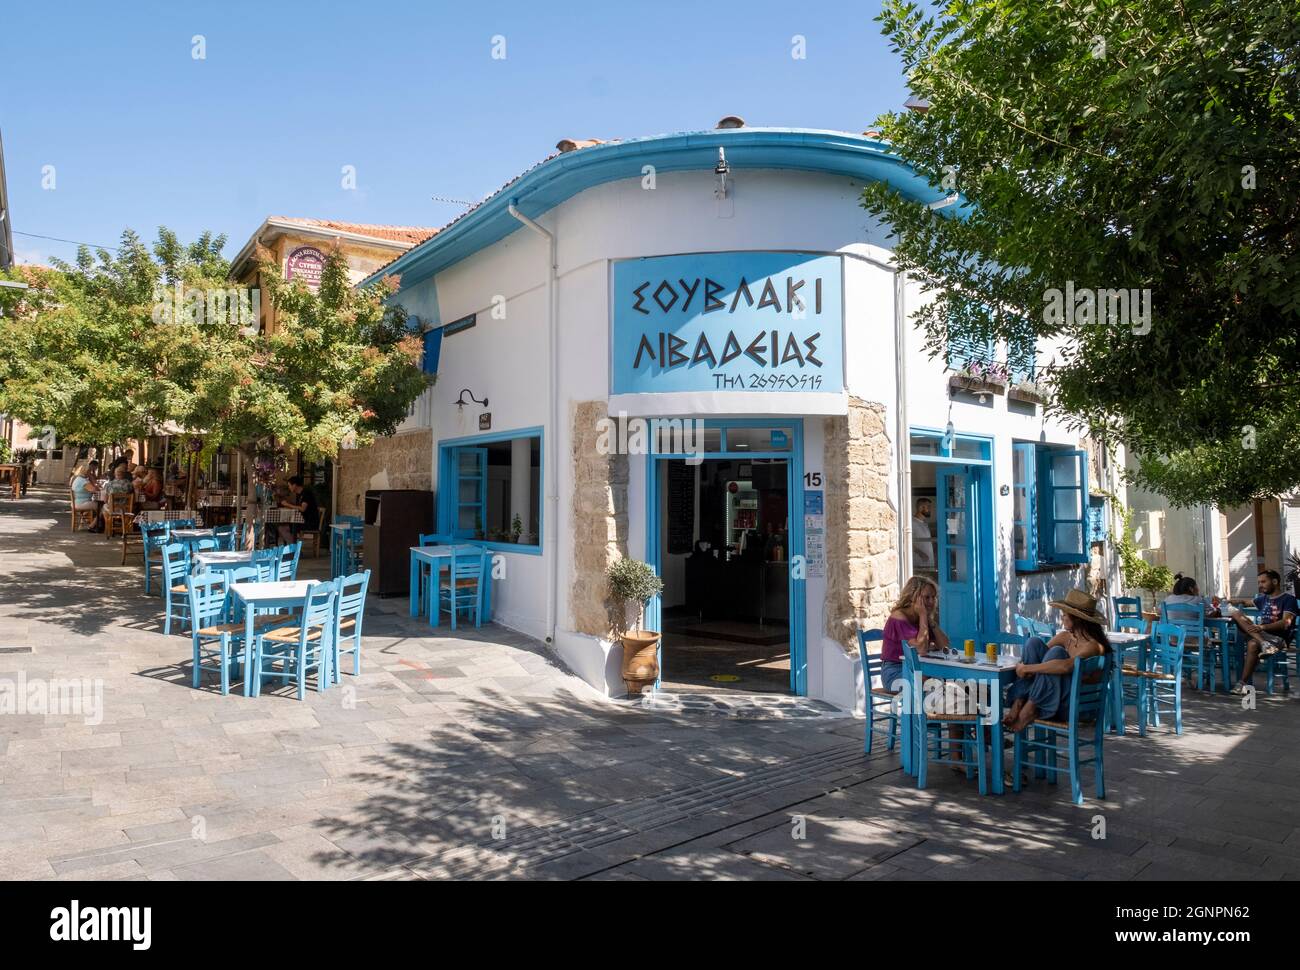 Traditionelles Café mit Tischen im Freien in der Altstadt von Paphos, paphos, Zypern Stockfoto